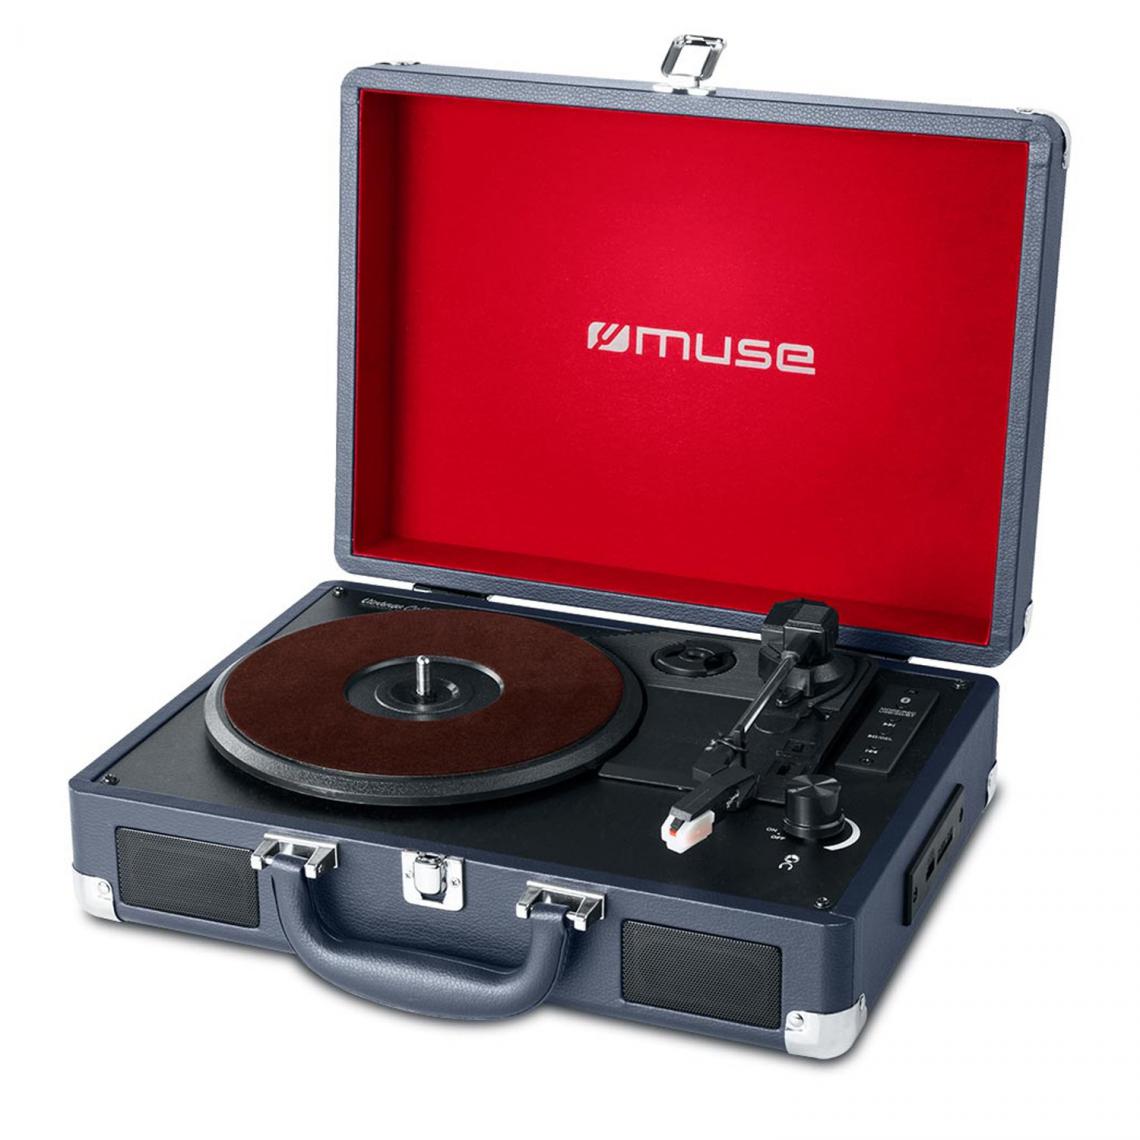 Muse - Platine vinyle stéréo 33/45/78 tours avec enceintes intégrées - USB/SD/AUX - Prise casque - Platine